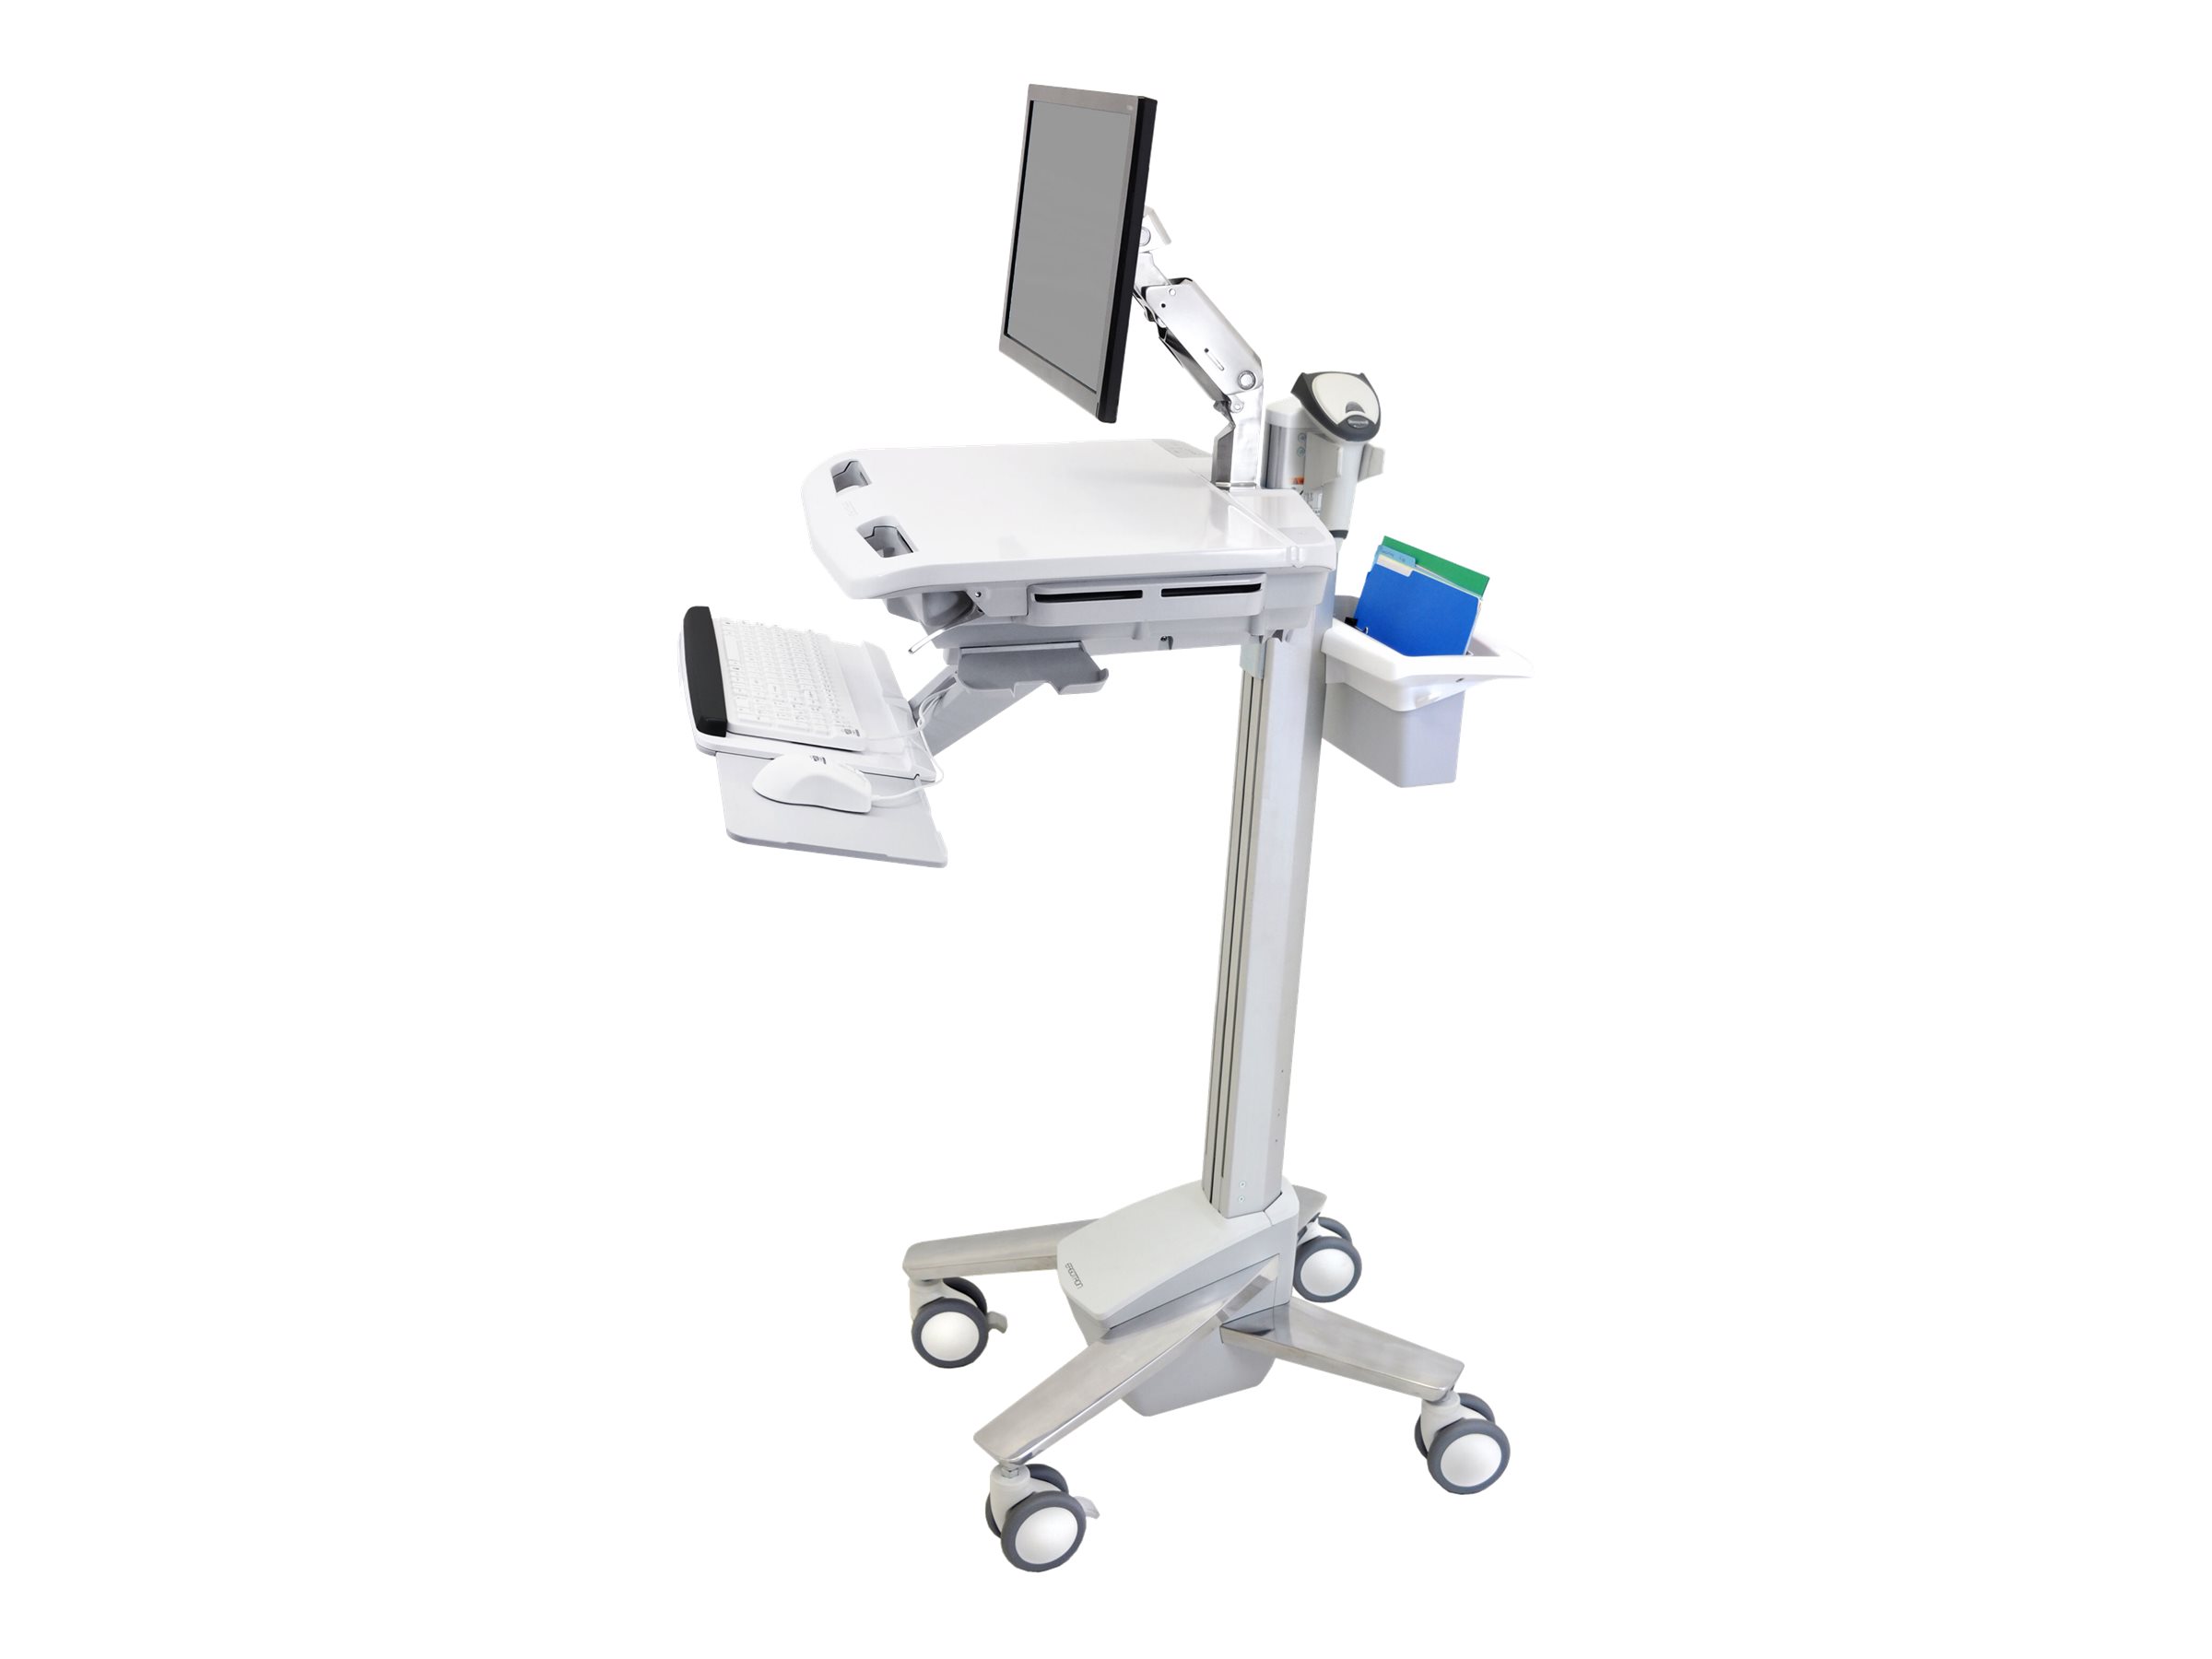 Ergotron - Chariot - pour écran LCD/équipement PC - médical - plastique, aluminium, acier zingué - gris, blanc, aluminium poli - Taille d'écran : jusqu'à 24 pouces - SV41-6200-0 - Accessoires pour scanner